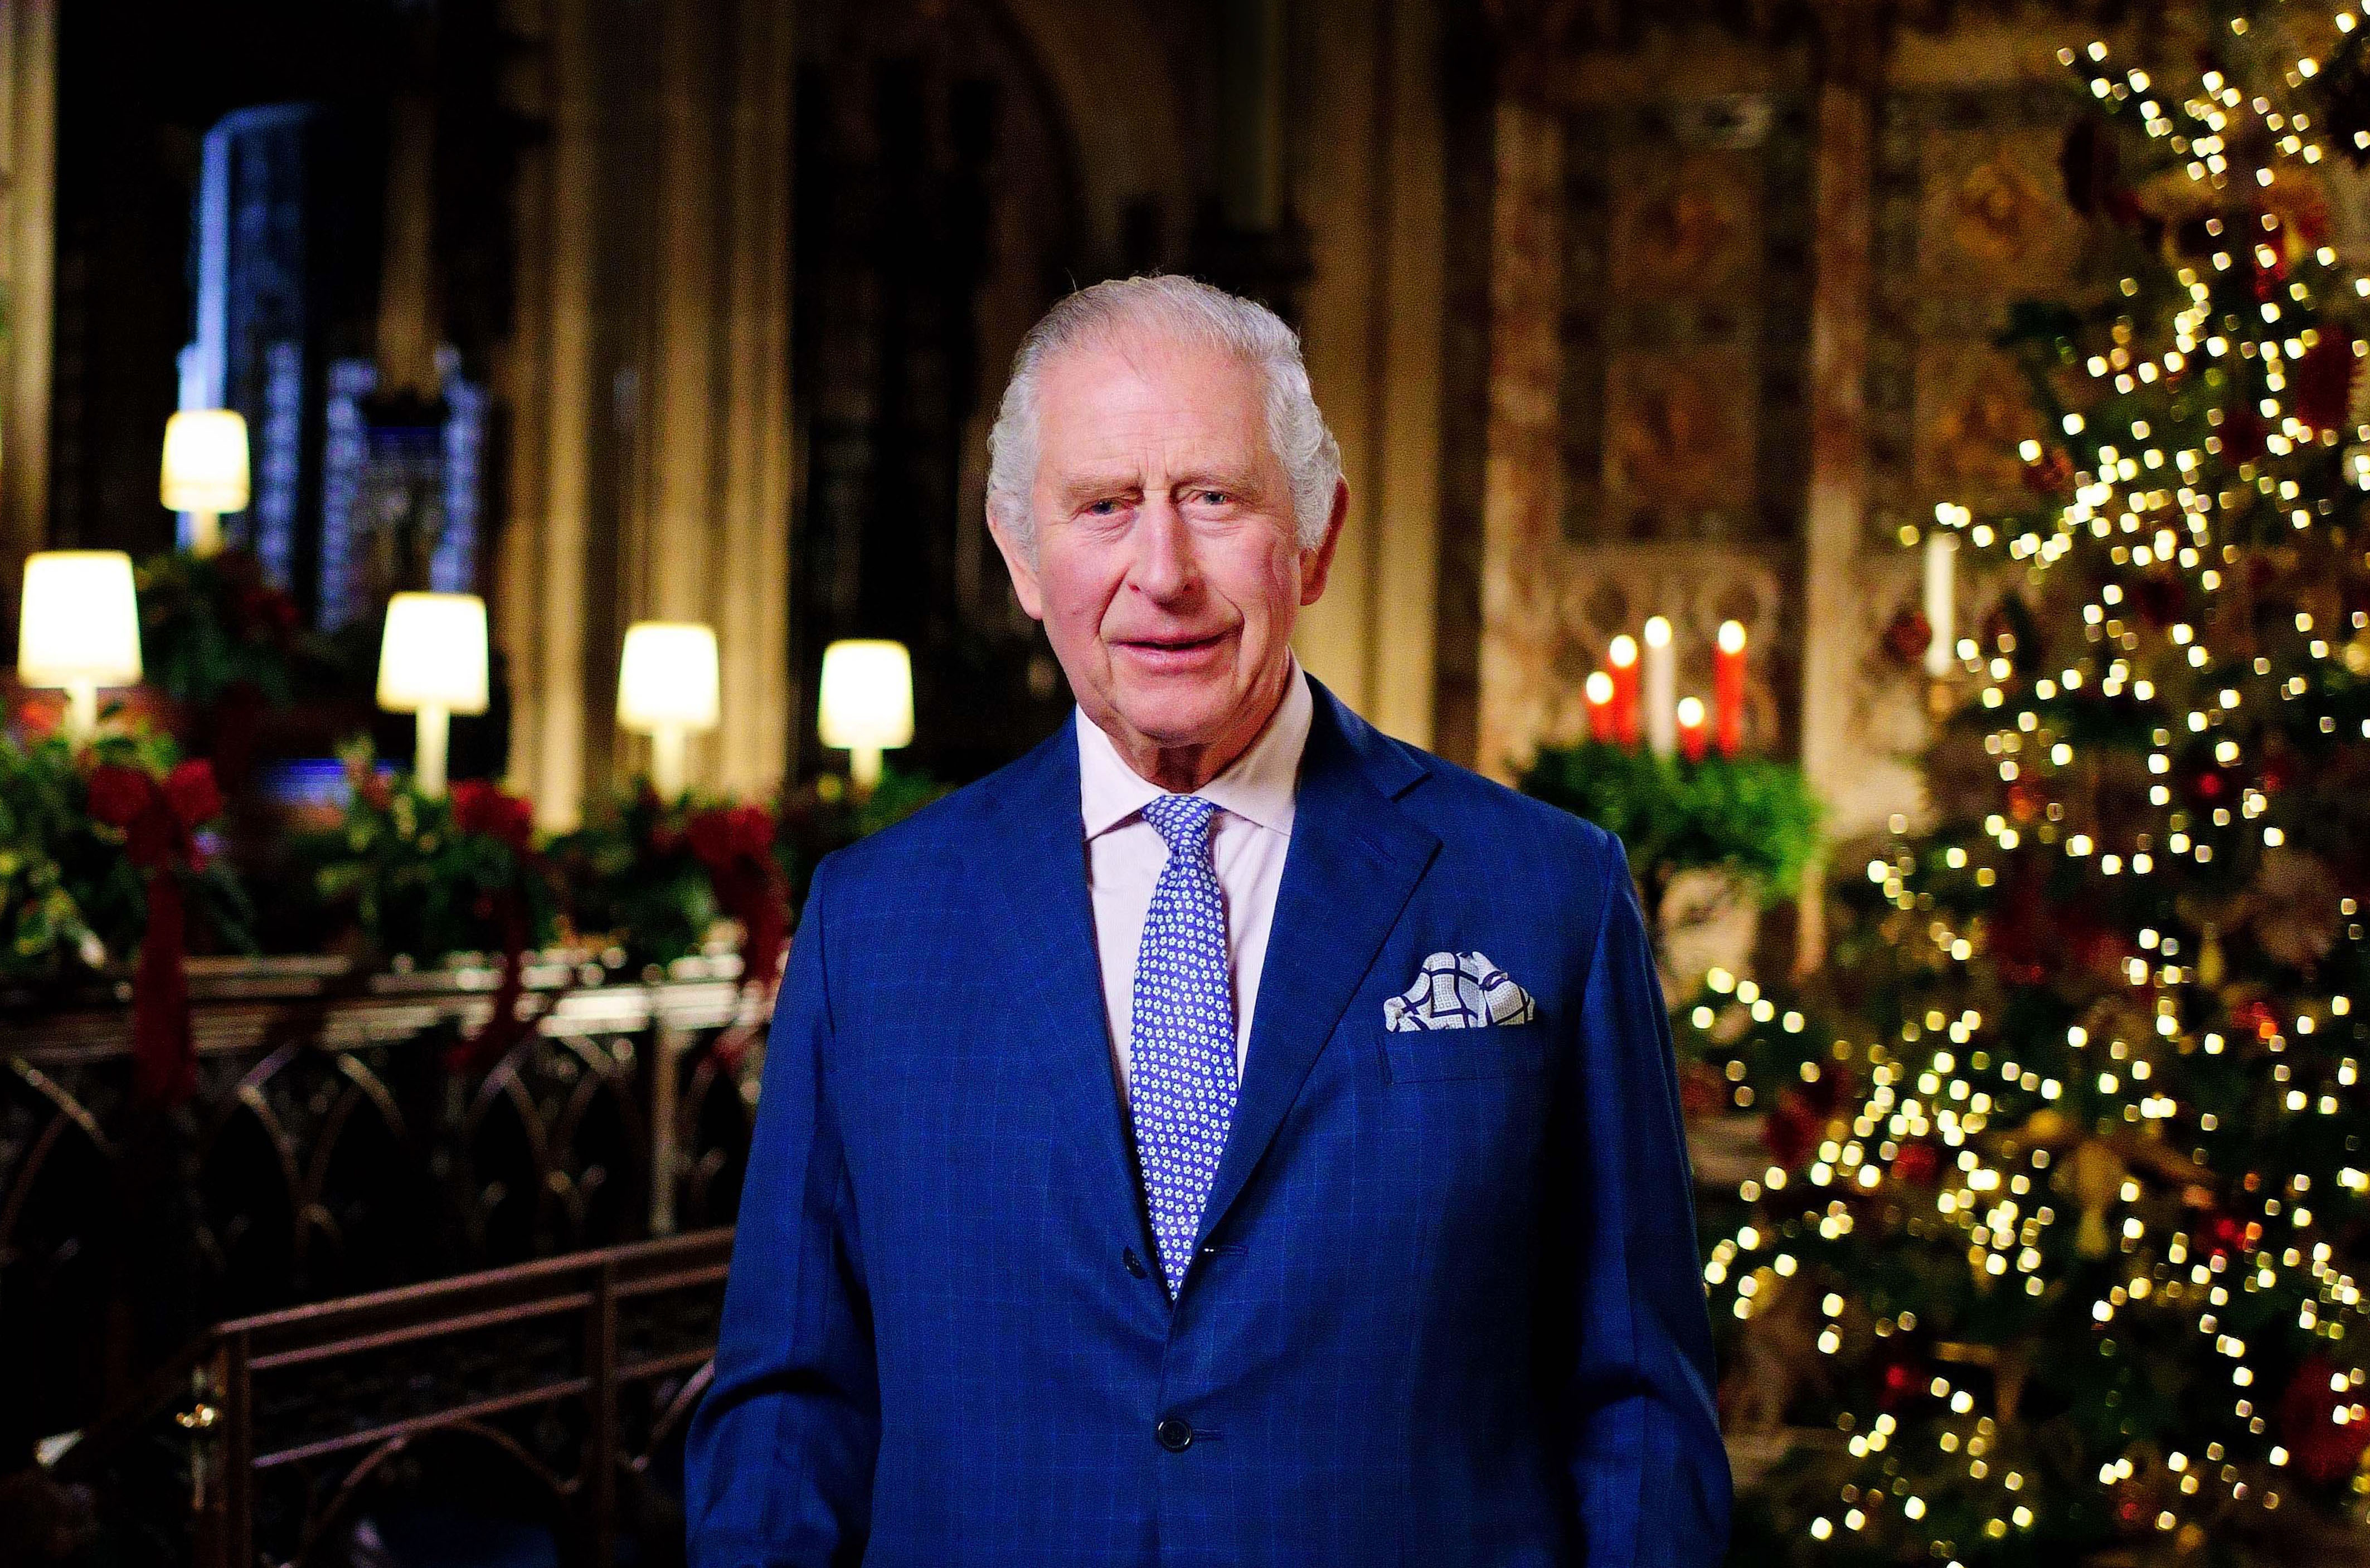 Le roi Charles III au château de Windsor, le 13 décembre 2022 à Windsor, en Angleterre | Source : Getty Images